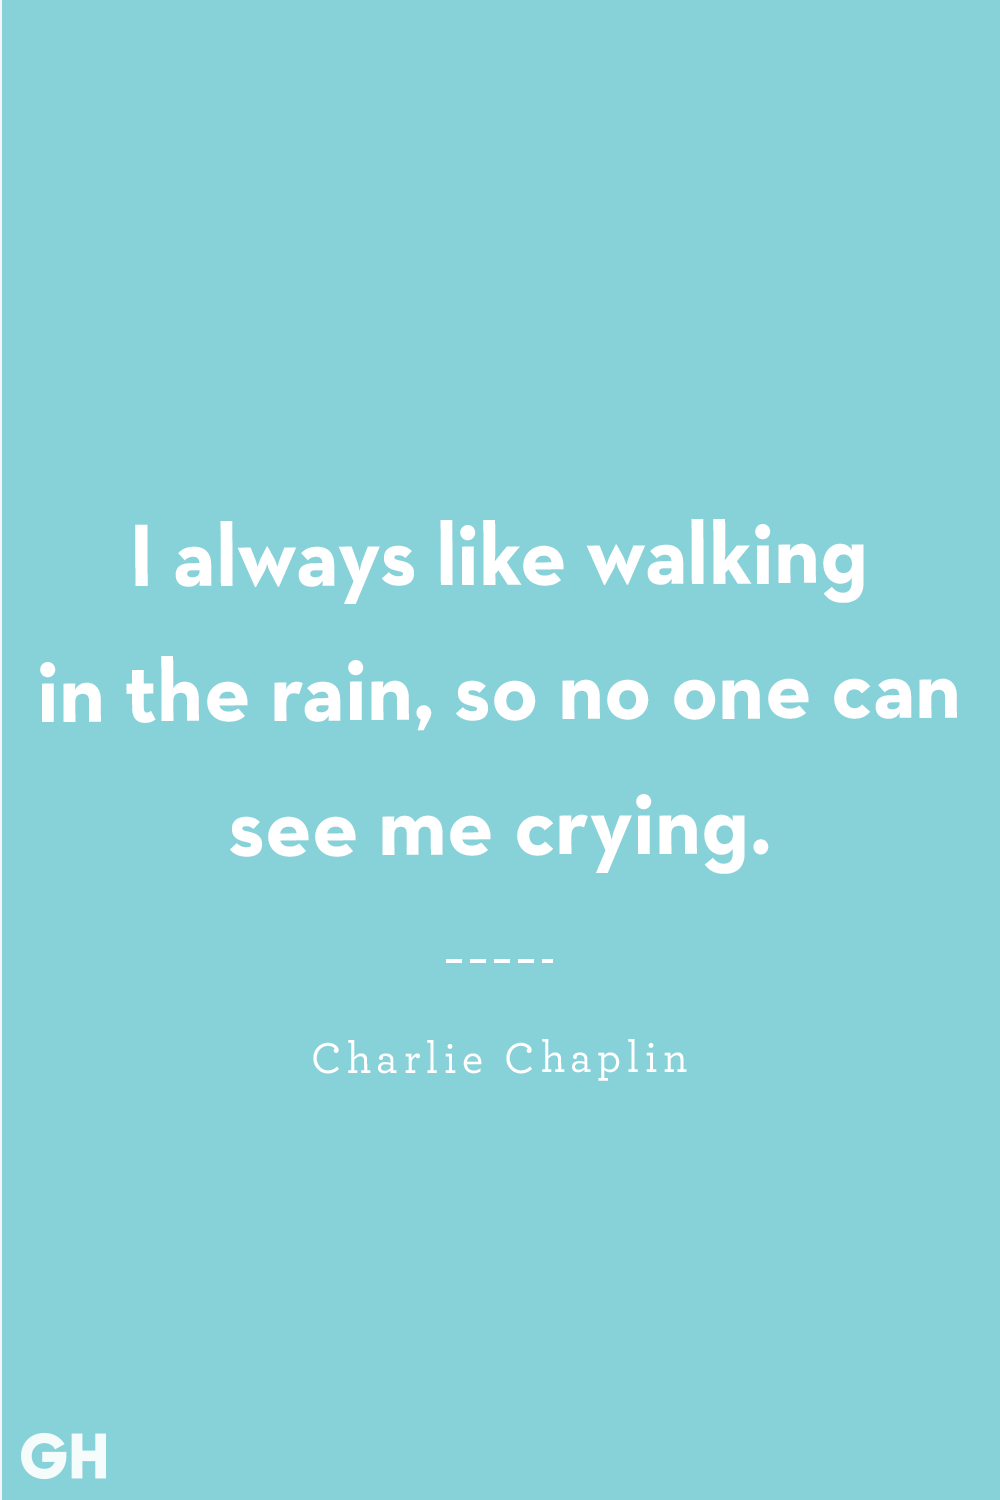 rain quotes sad